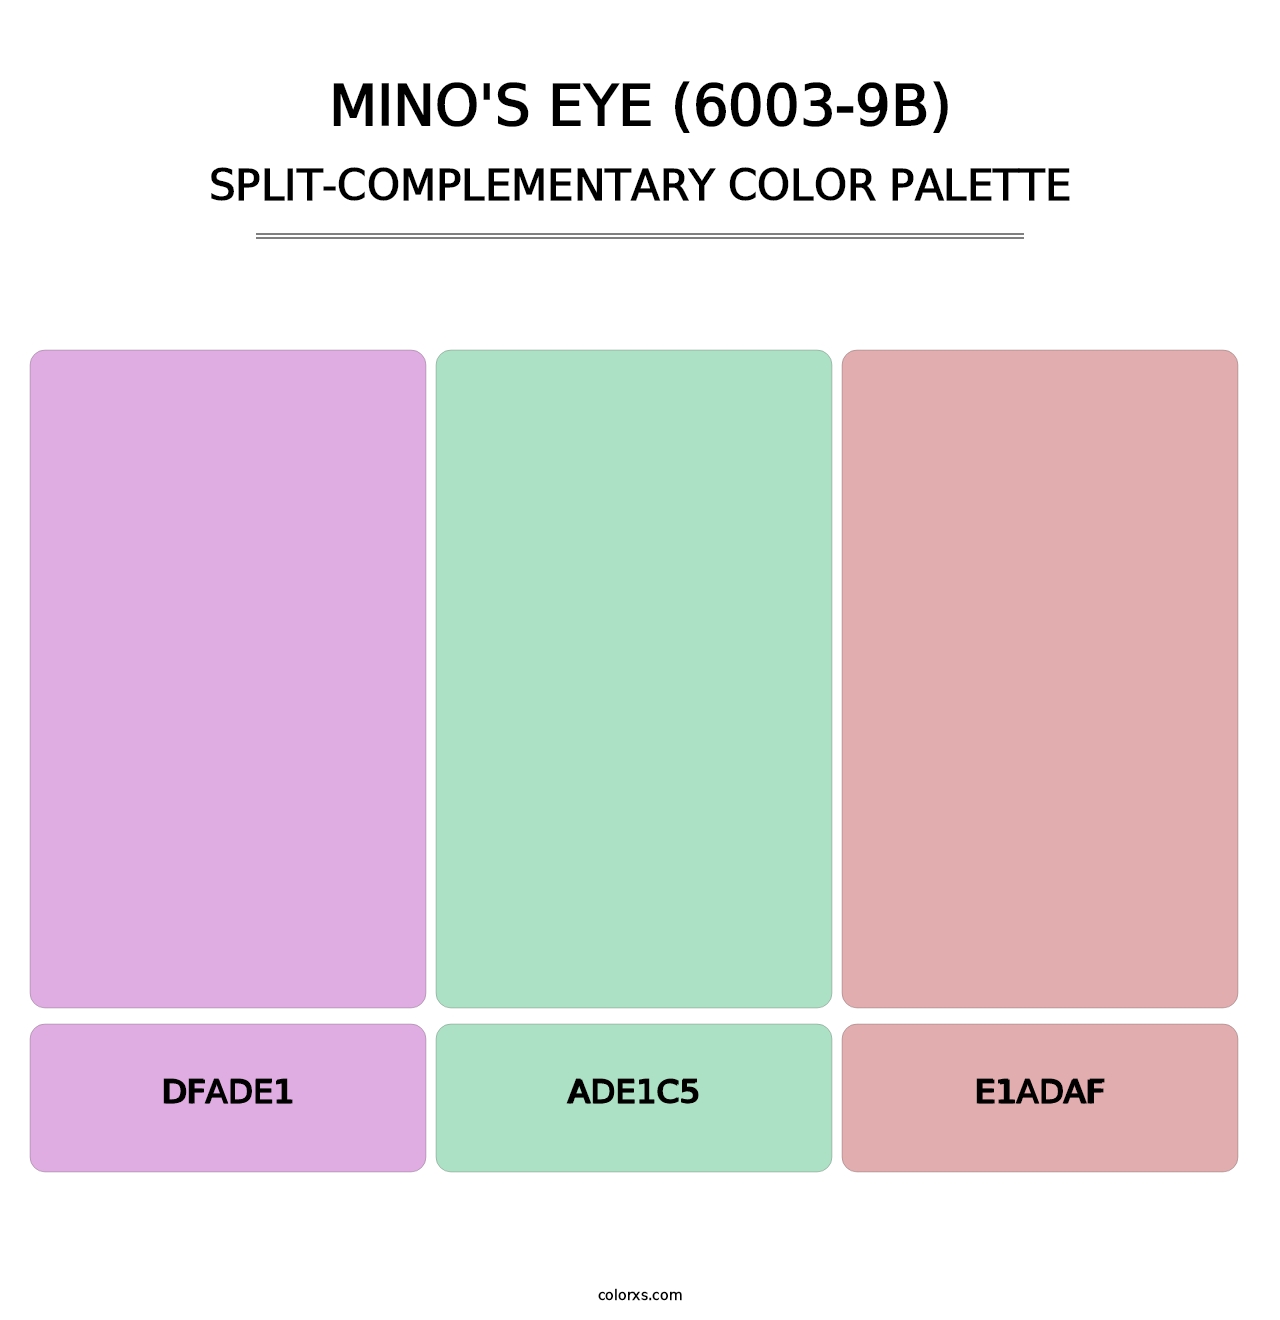 Mino's Eye (6003-9B) - Split-Complementary Color Palette